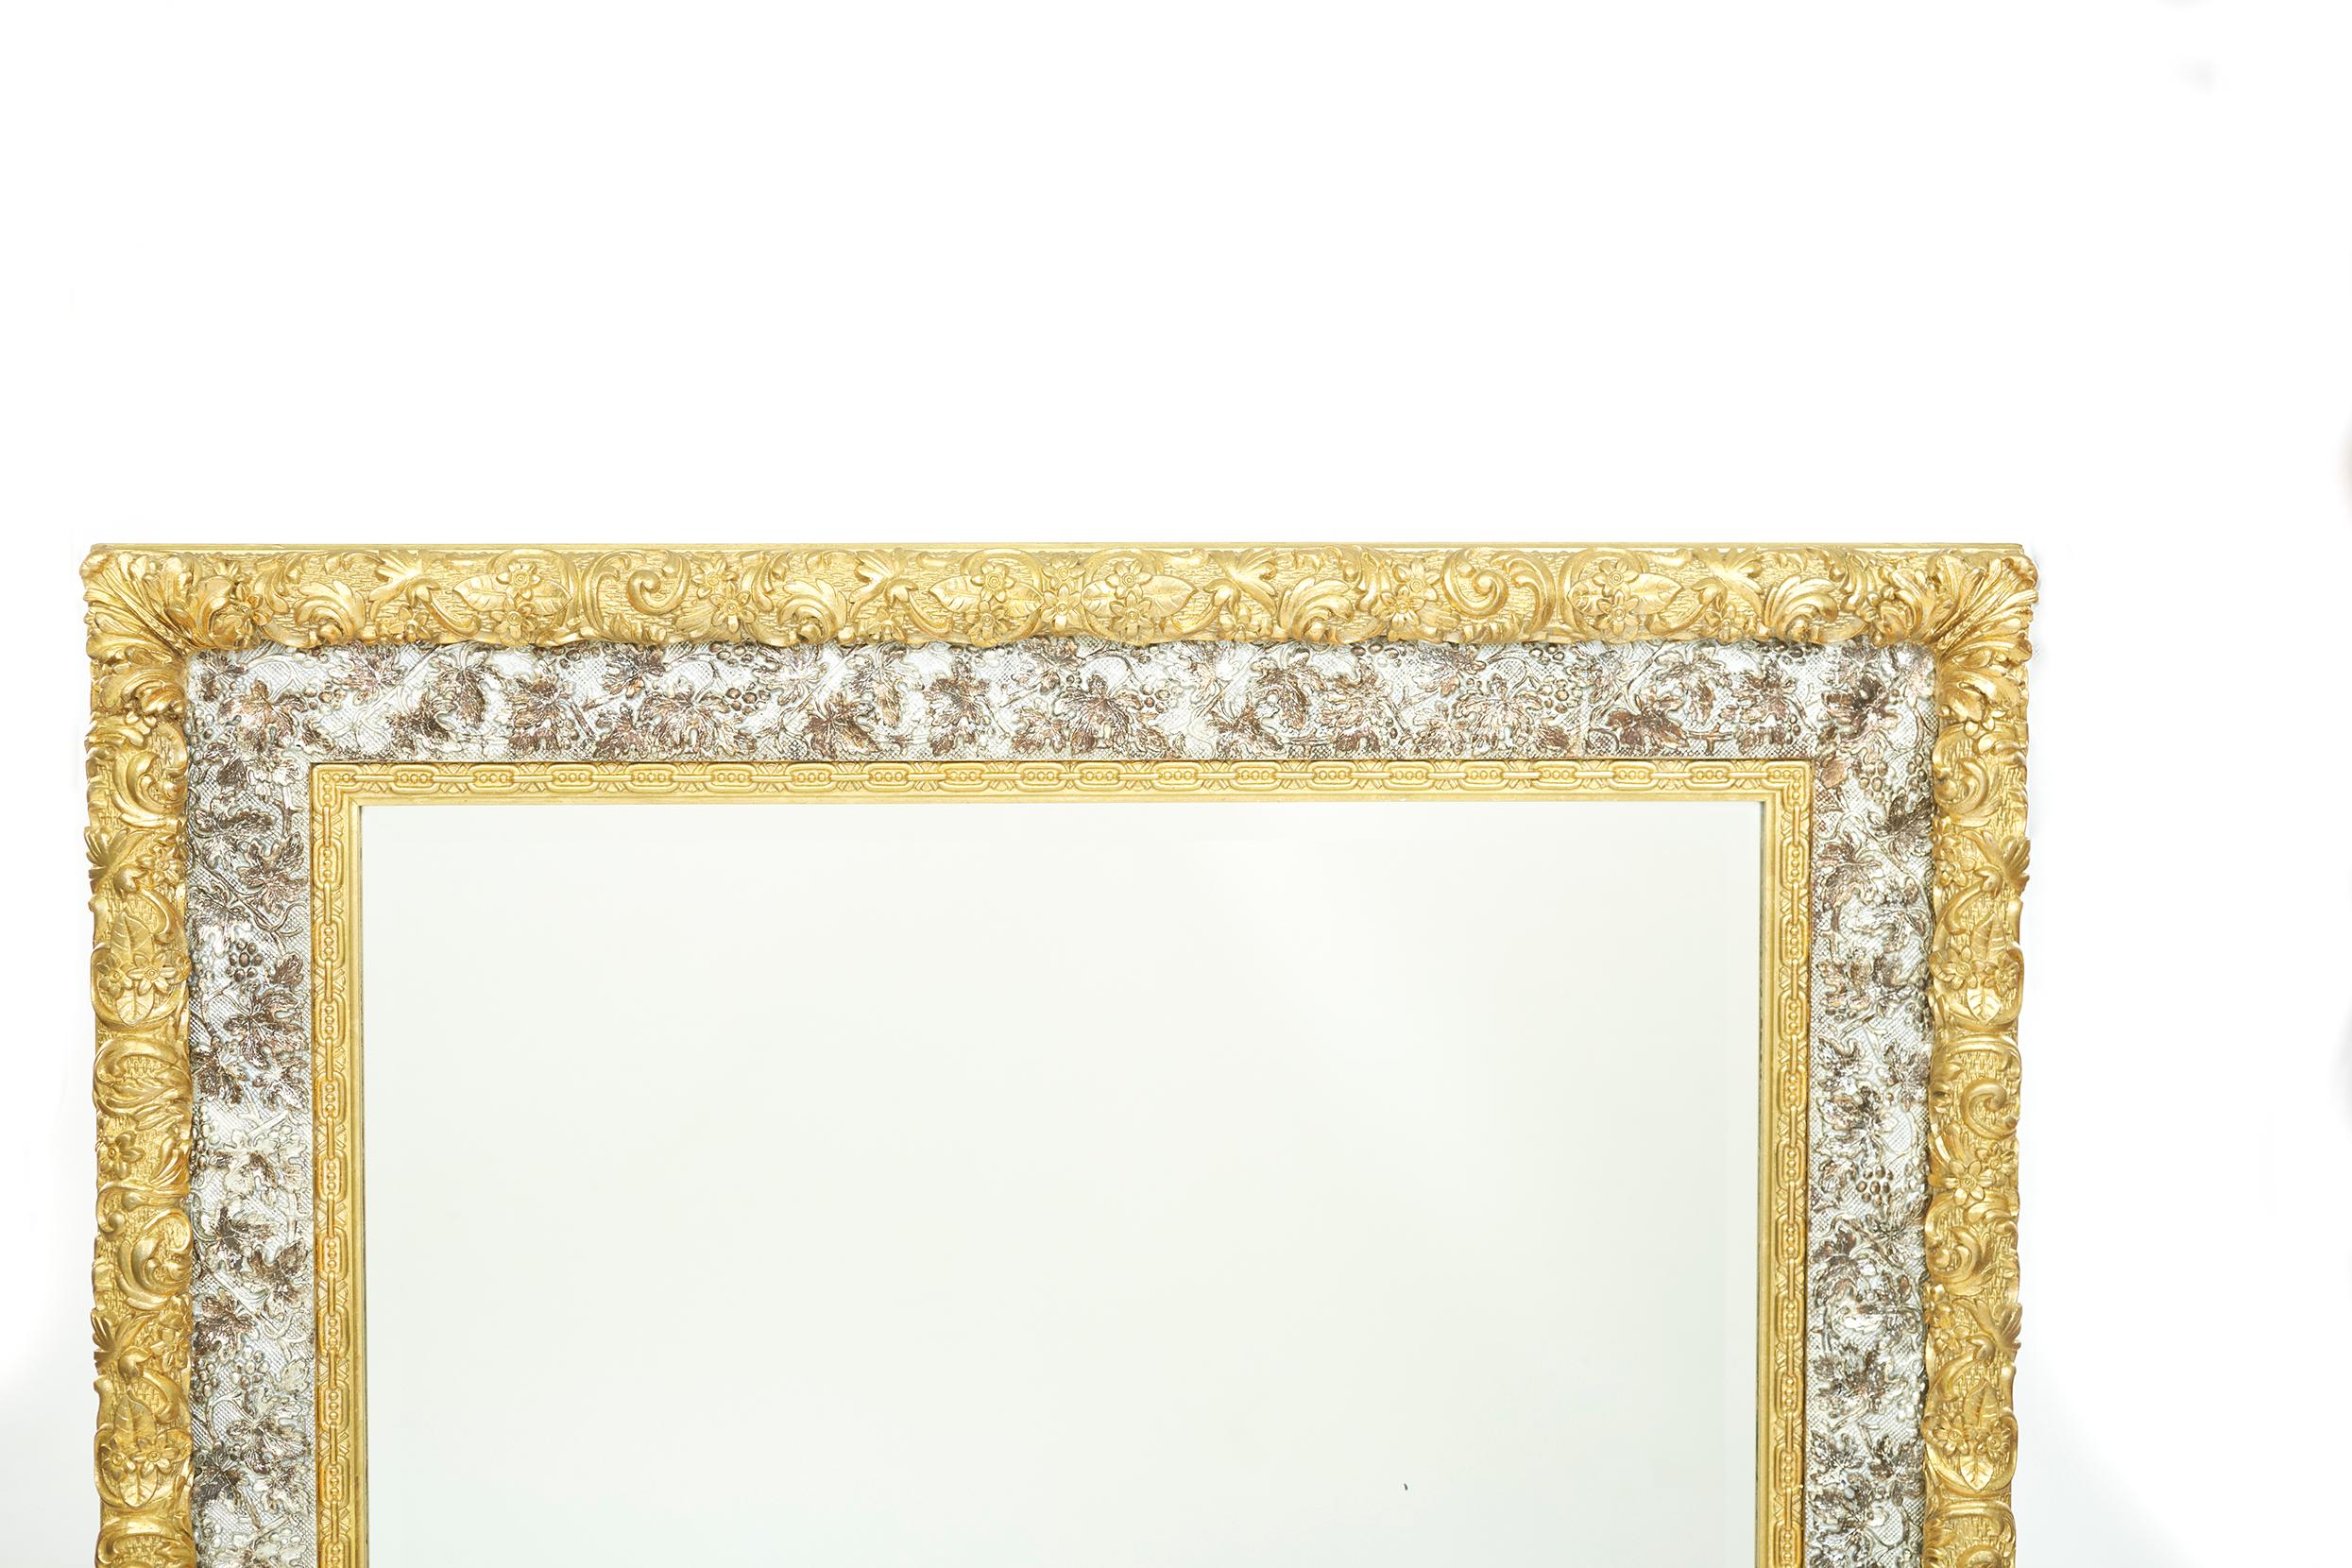 19. Jahrhundert neoklassischen Stil vergoldetes Holz gerahmt hängenden Wandspiegel mit niedrigen Relief Akanthus schnitzen rechteckige Form mit zwei Ton vergoldet gerahmt. Der Wandspiegel ist in sehr gutem Zustand. Leichte alters- und